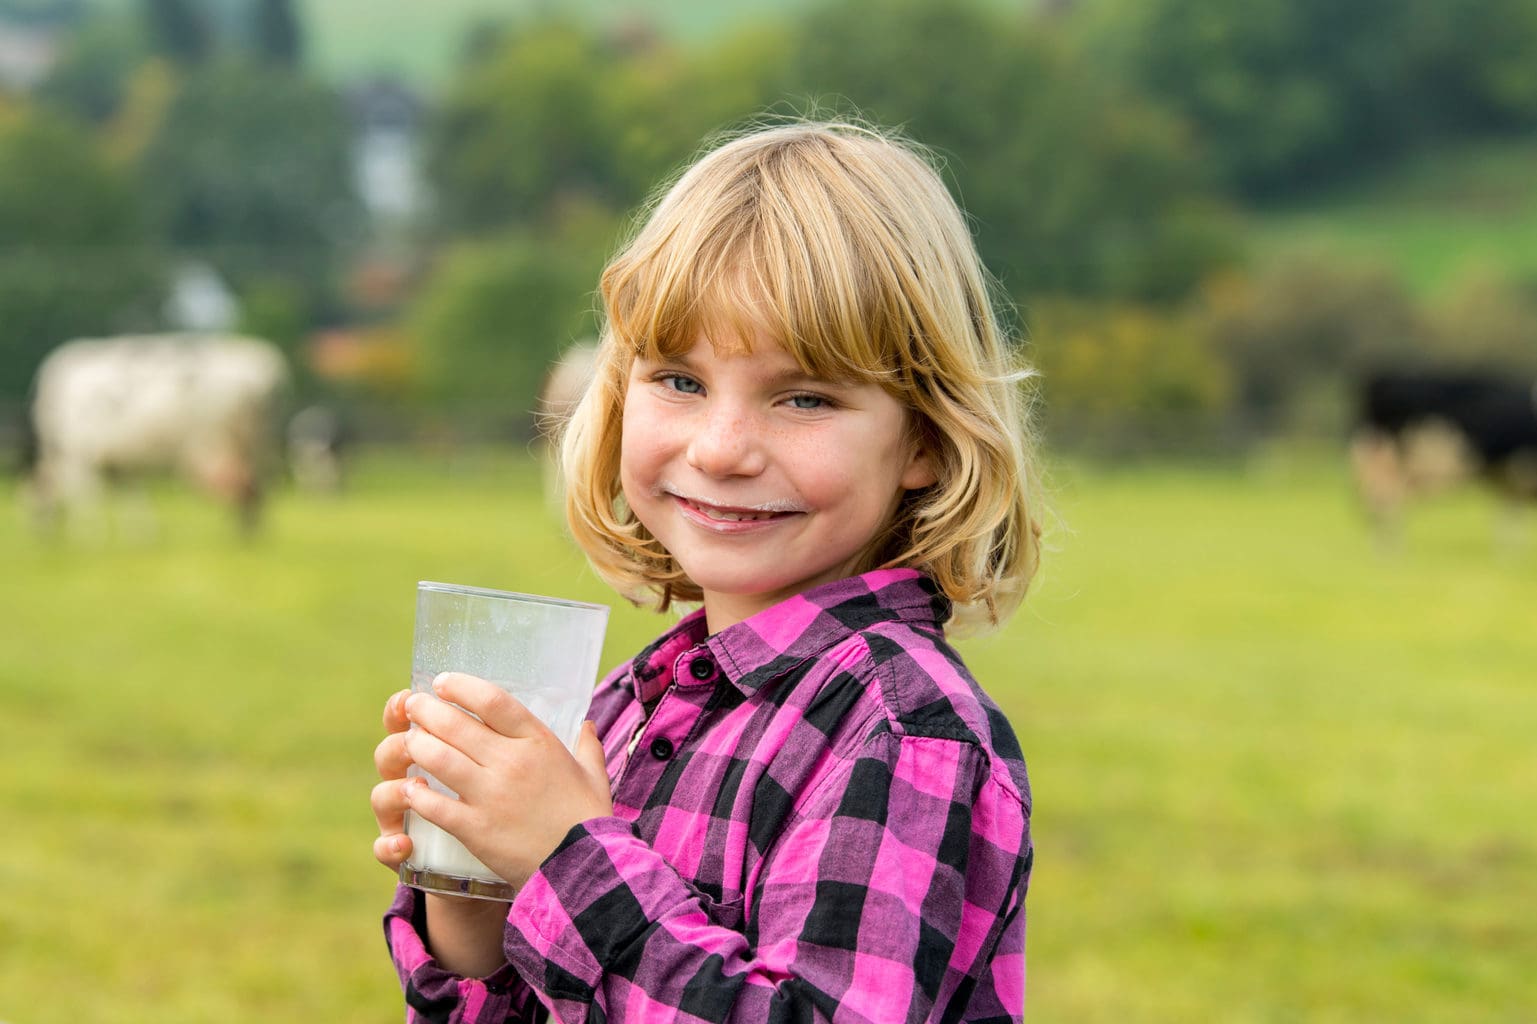 Melk herontdekken lijkt een leuke taak te zijn voor dit jong meisje